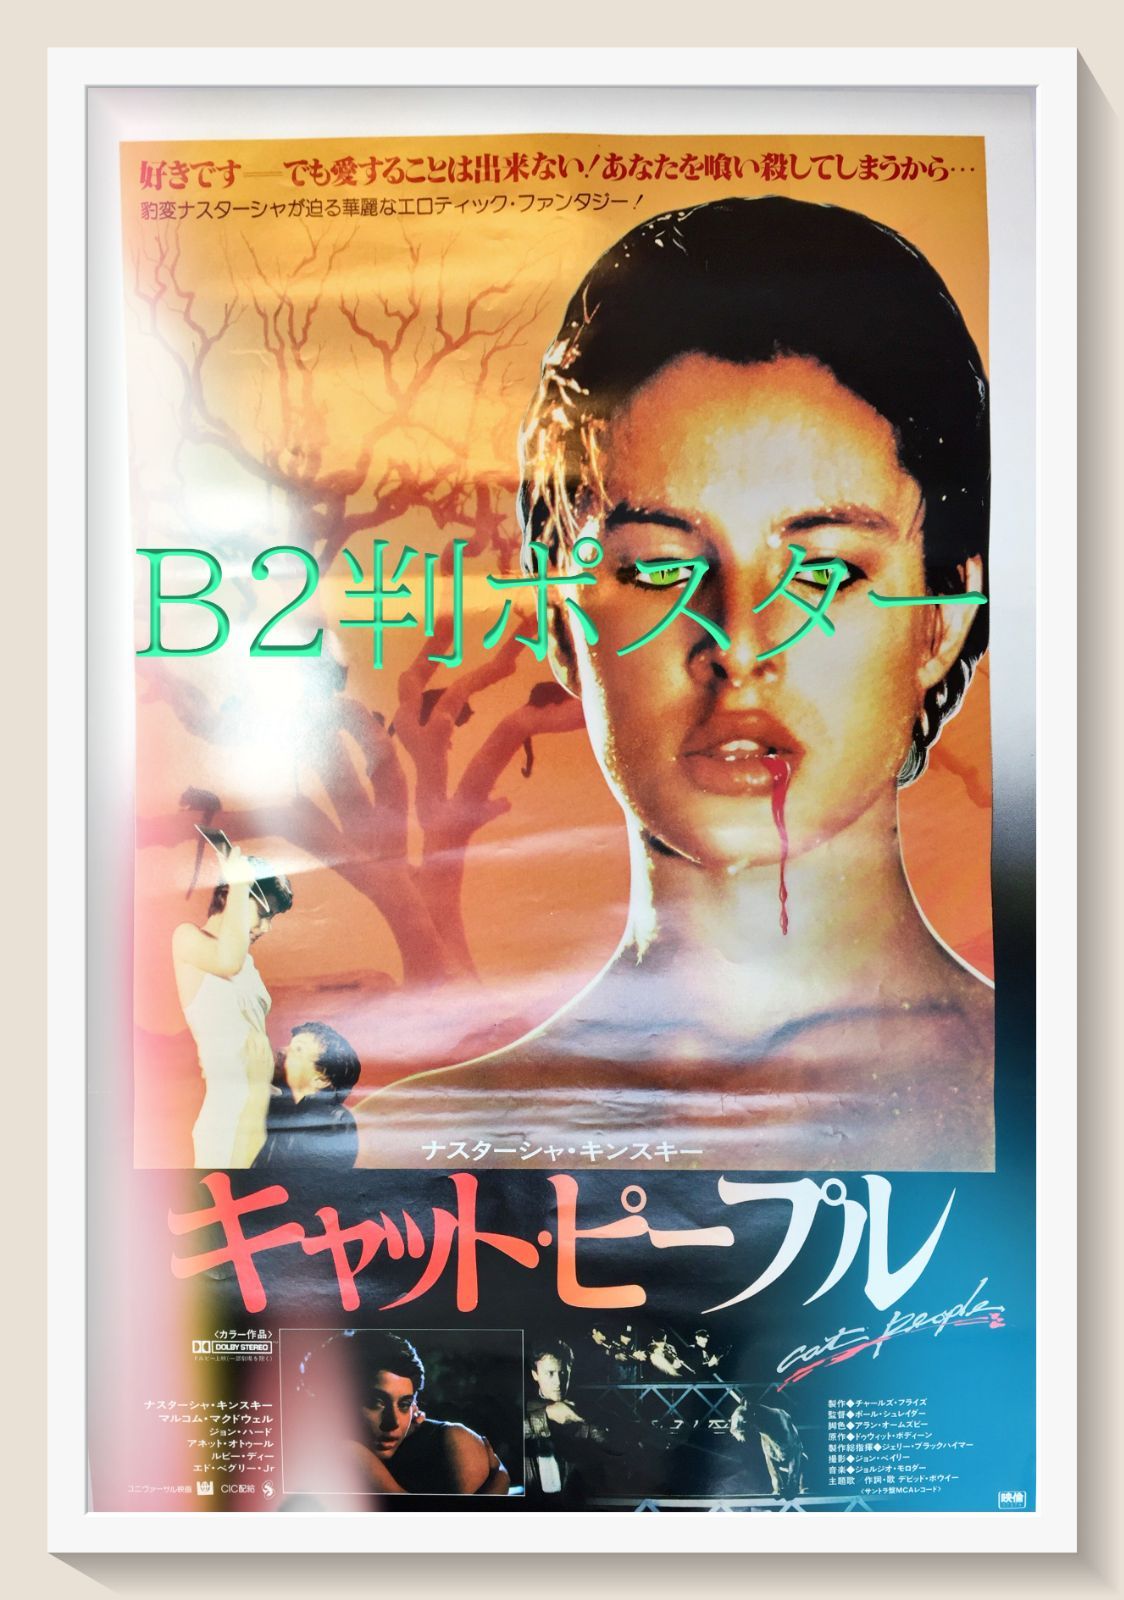 『キャット・ピープル』映画B2判オリジナルポスター